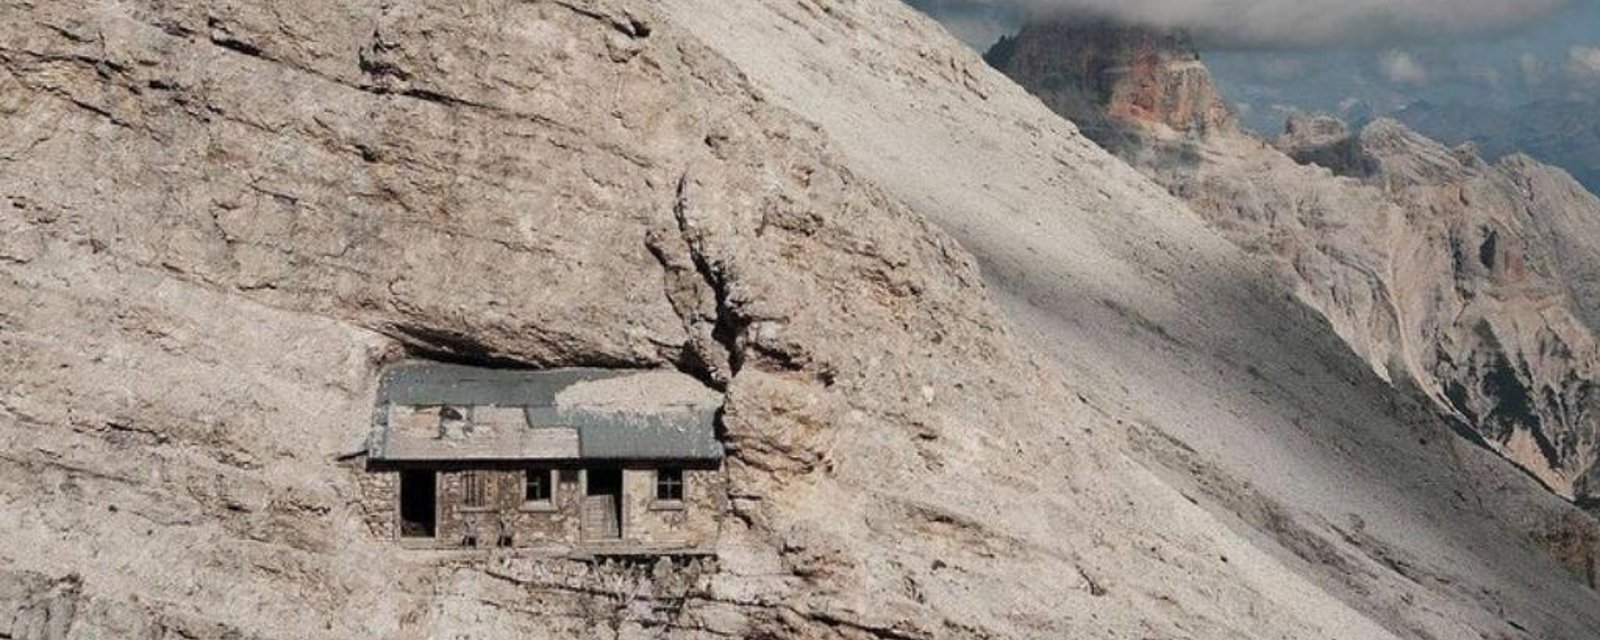 La « maison la plus isolée du monde » est coincée à côté d'une chaîne de montagnes